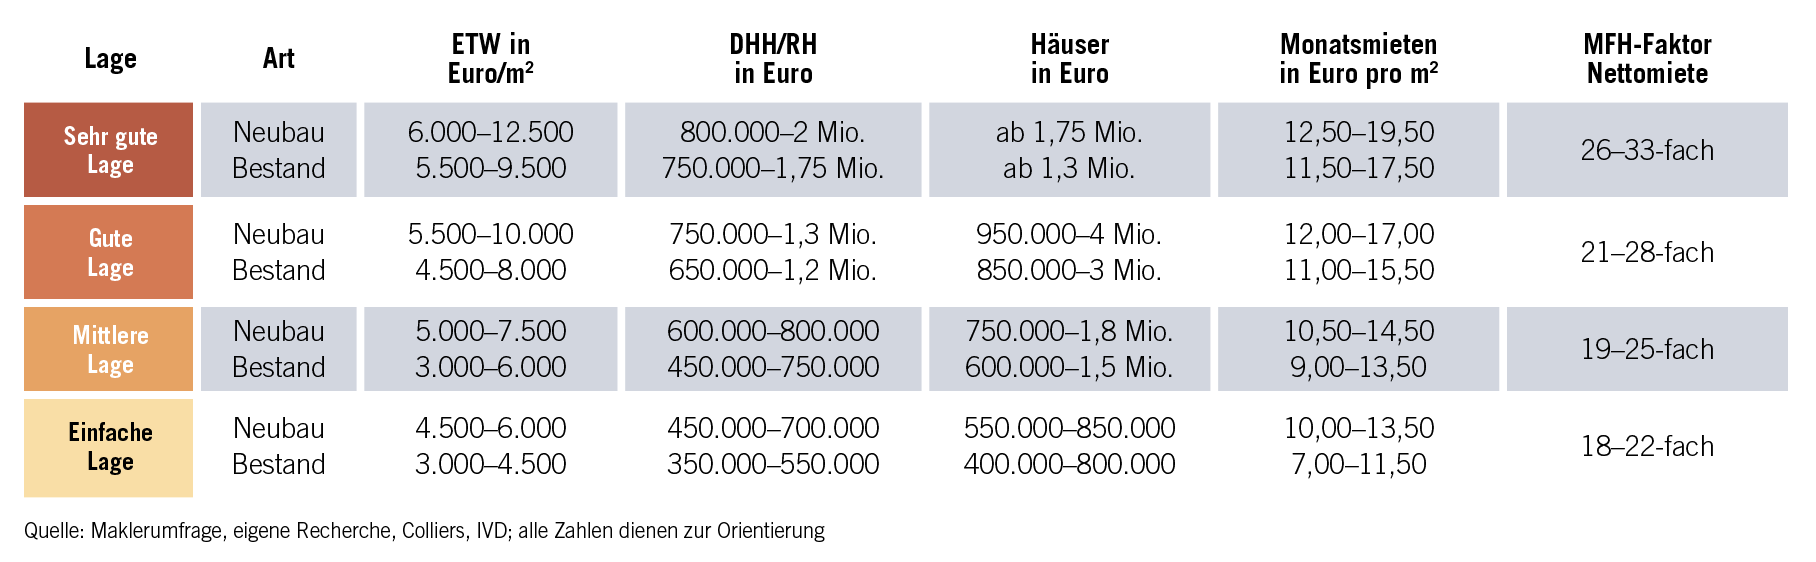 Grafik Immobilienpreise in Potsdam Potsdam_Lagen.jpg